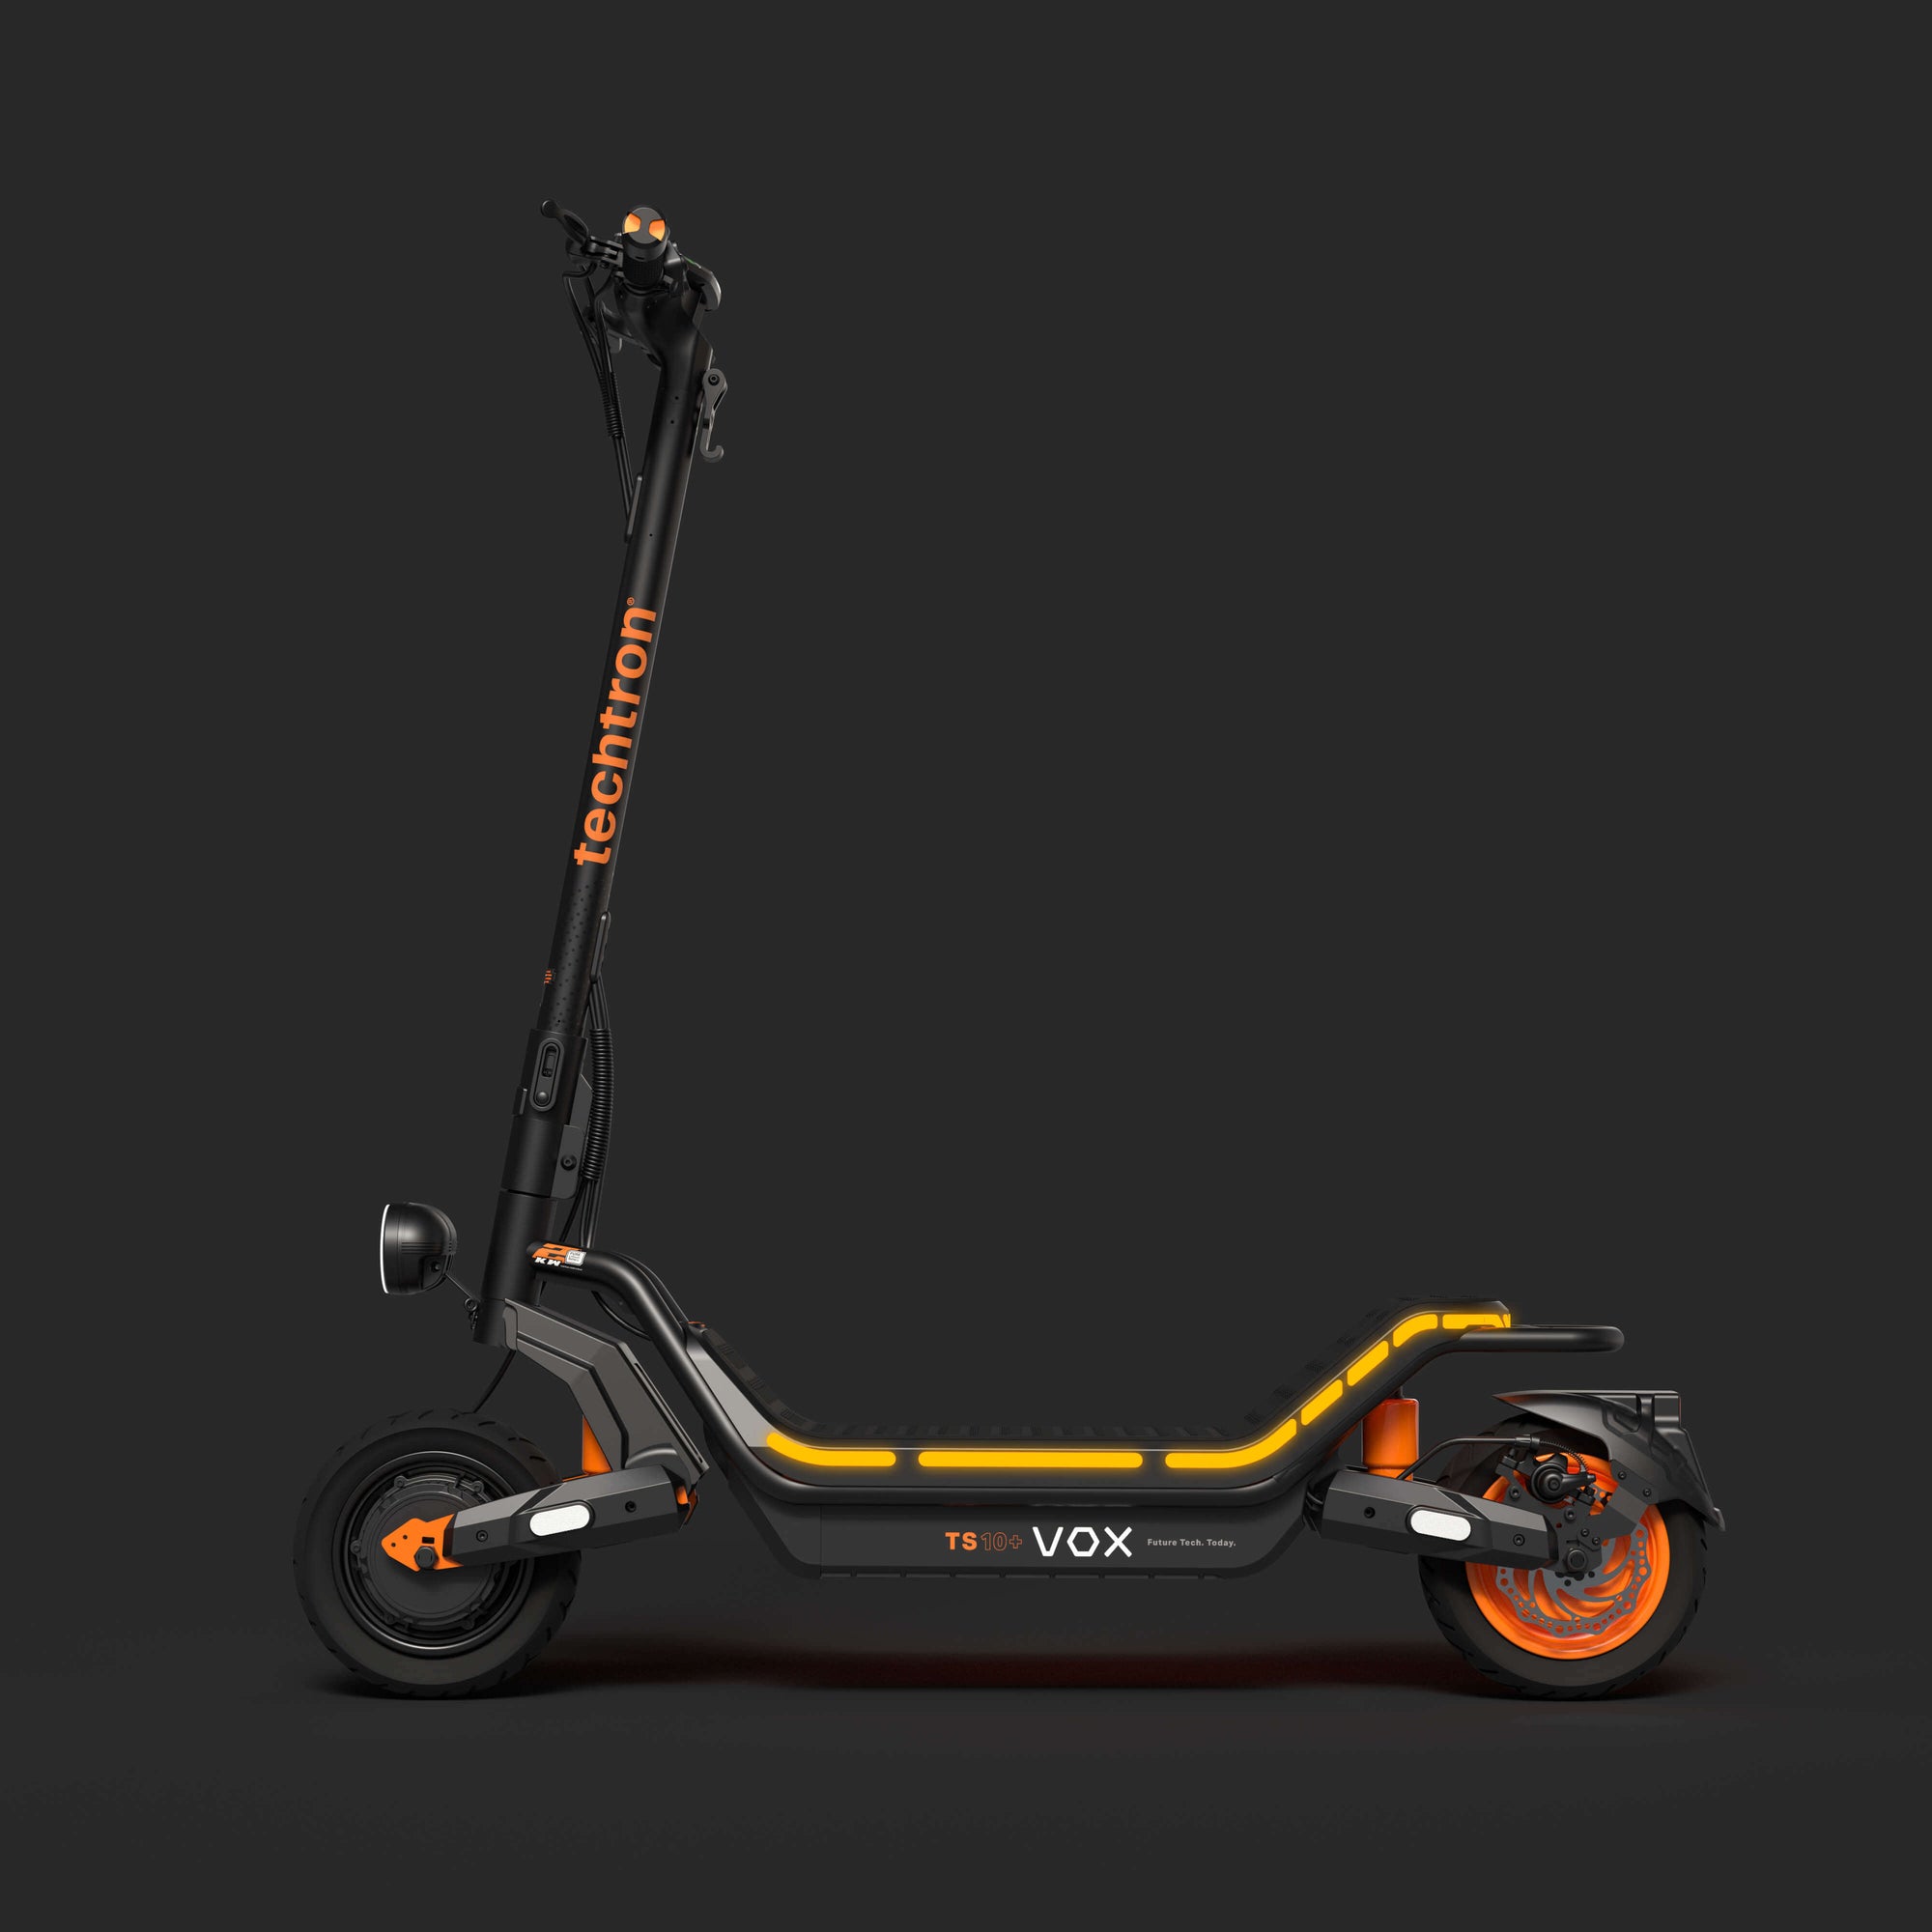 techtron® TS10+ VOX - 2kW* Electric Scooter techtron